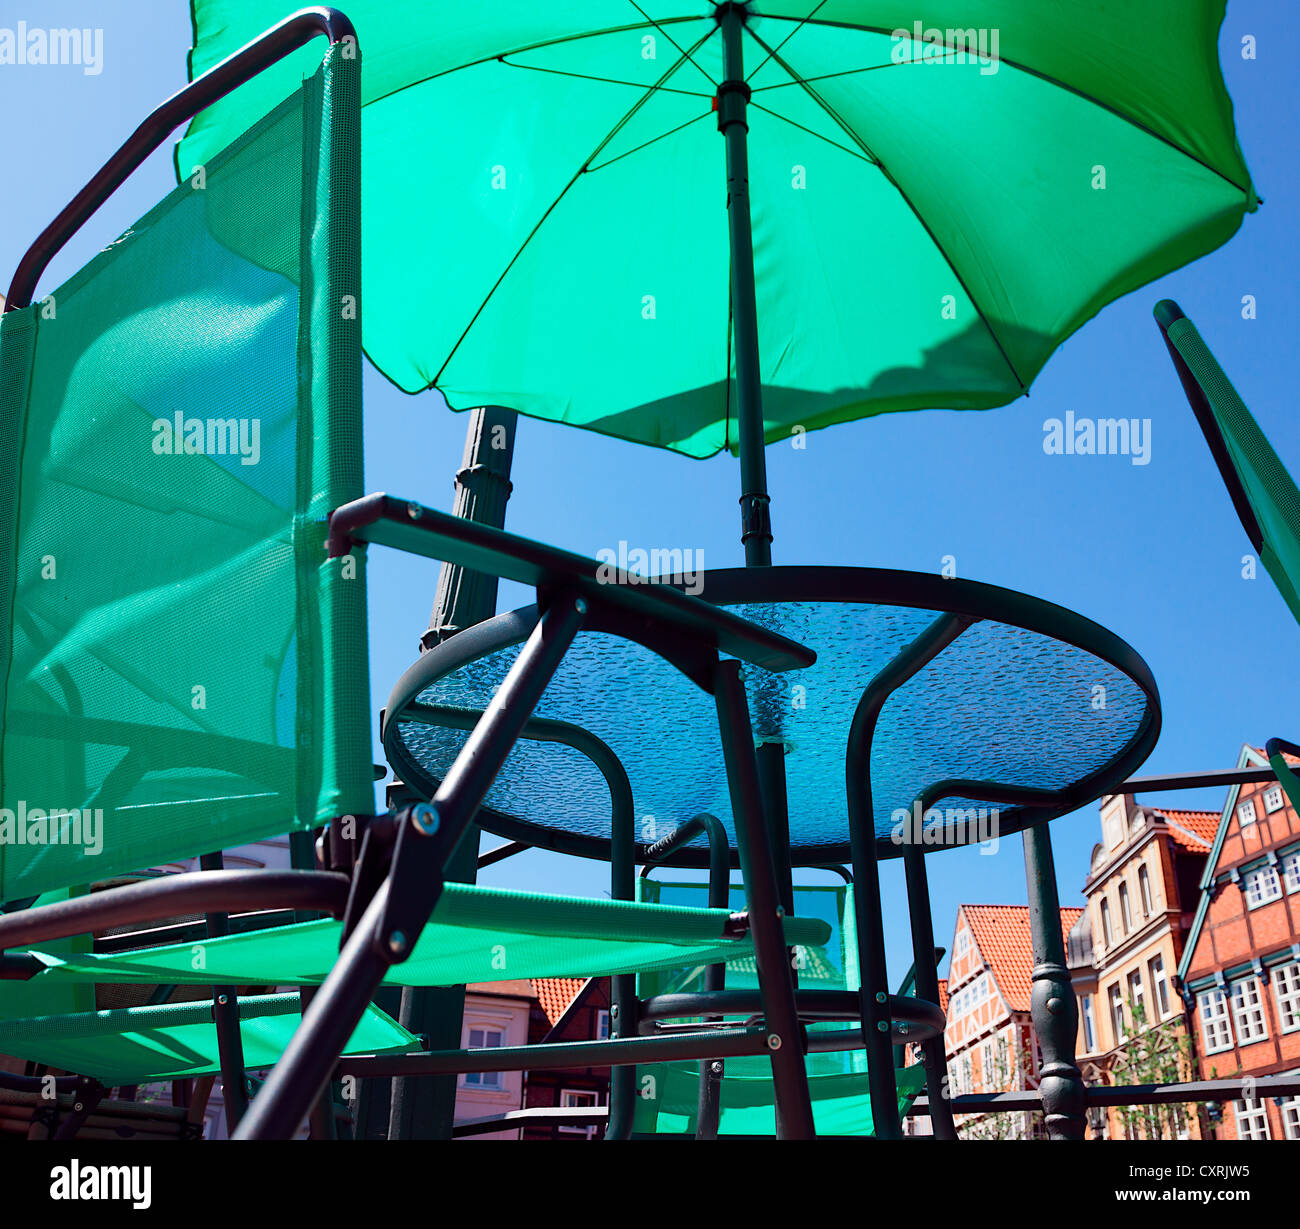 Parasol vert d'un café de rue dans la vieille ville de Stade, Basse-Saxe, Allemagne, Europe Banque D'Images